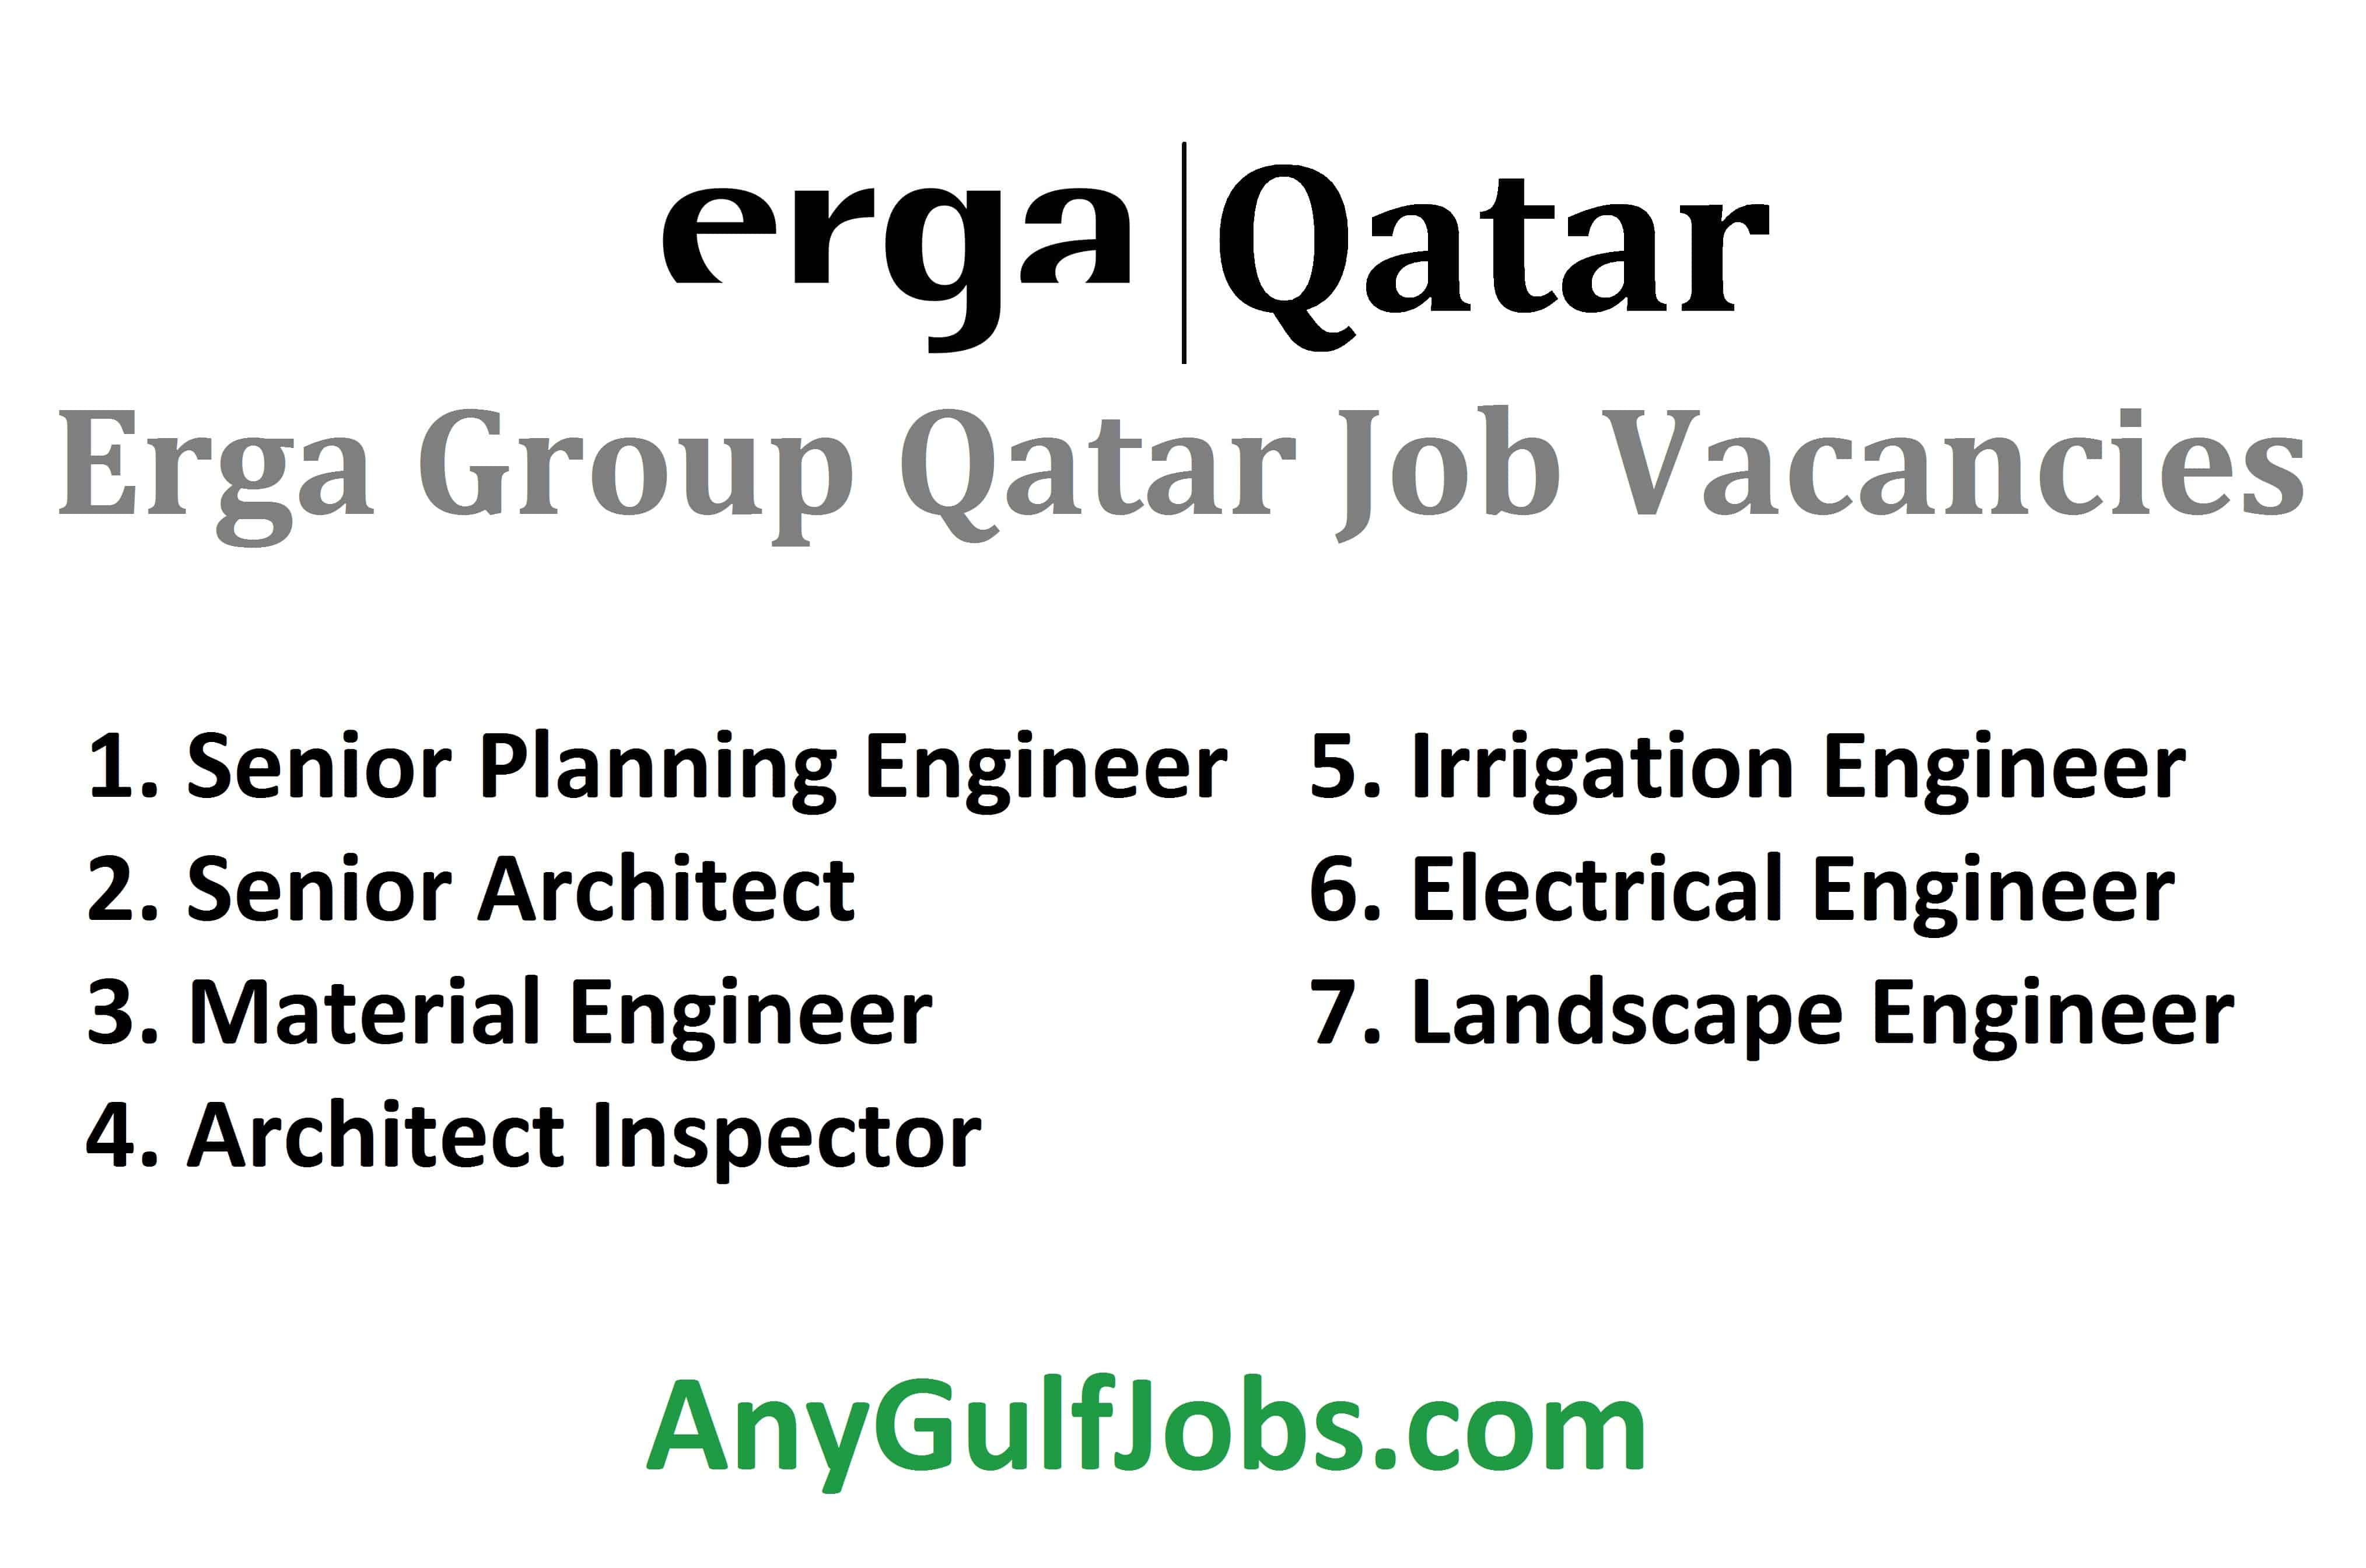 Erga Group Qatar Job Vacancies